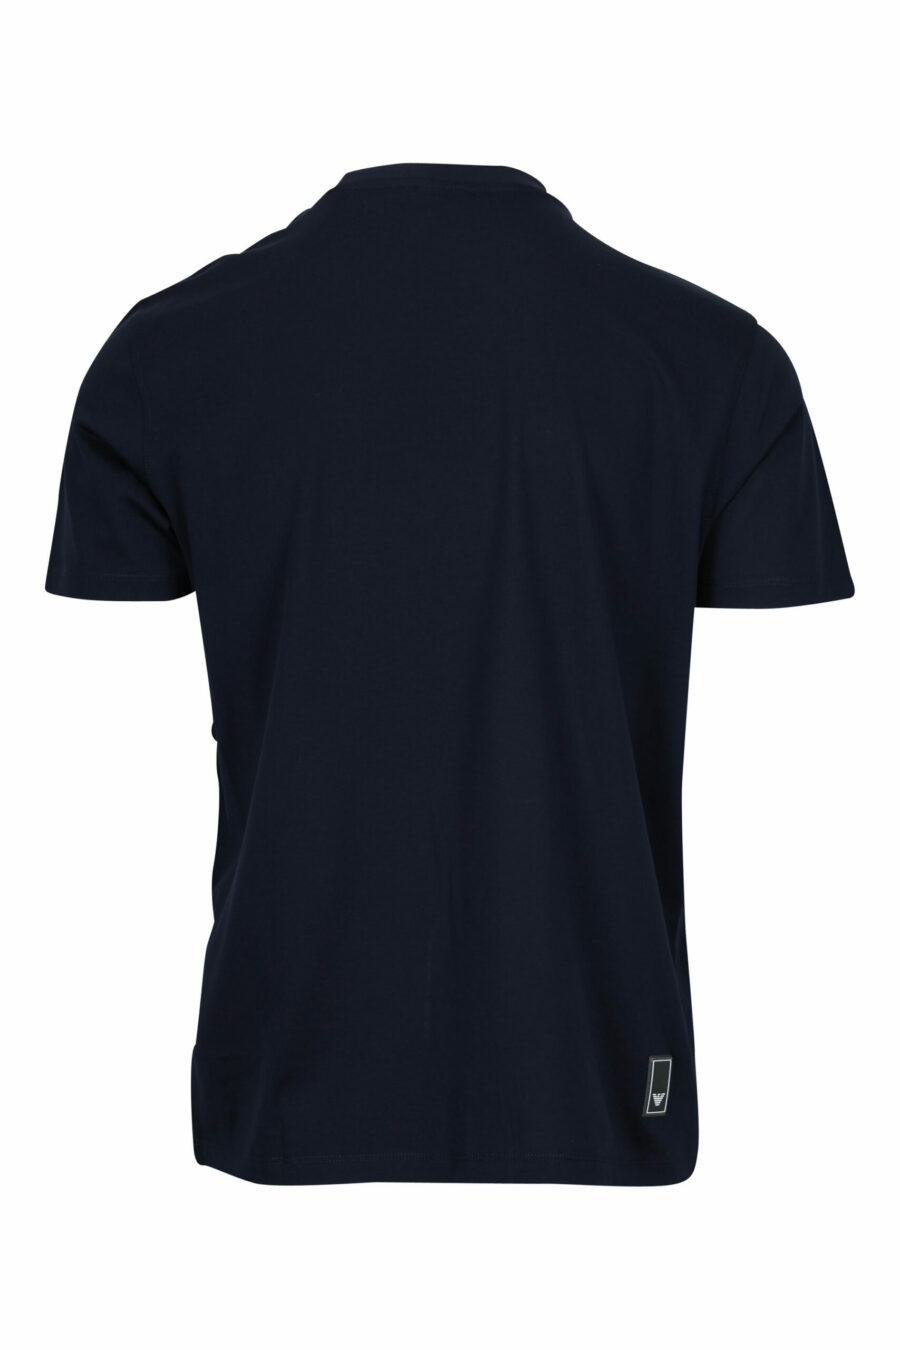 Dunkelblaues T-Shirt mit Adler-Minilogie - 8058997155687 1 skaliert